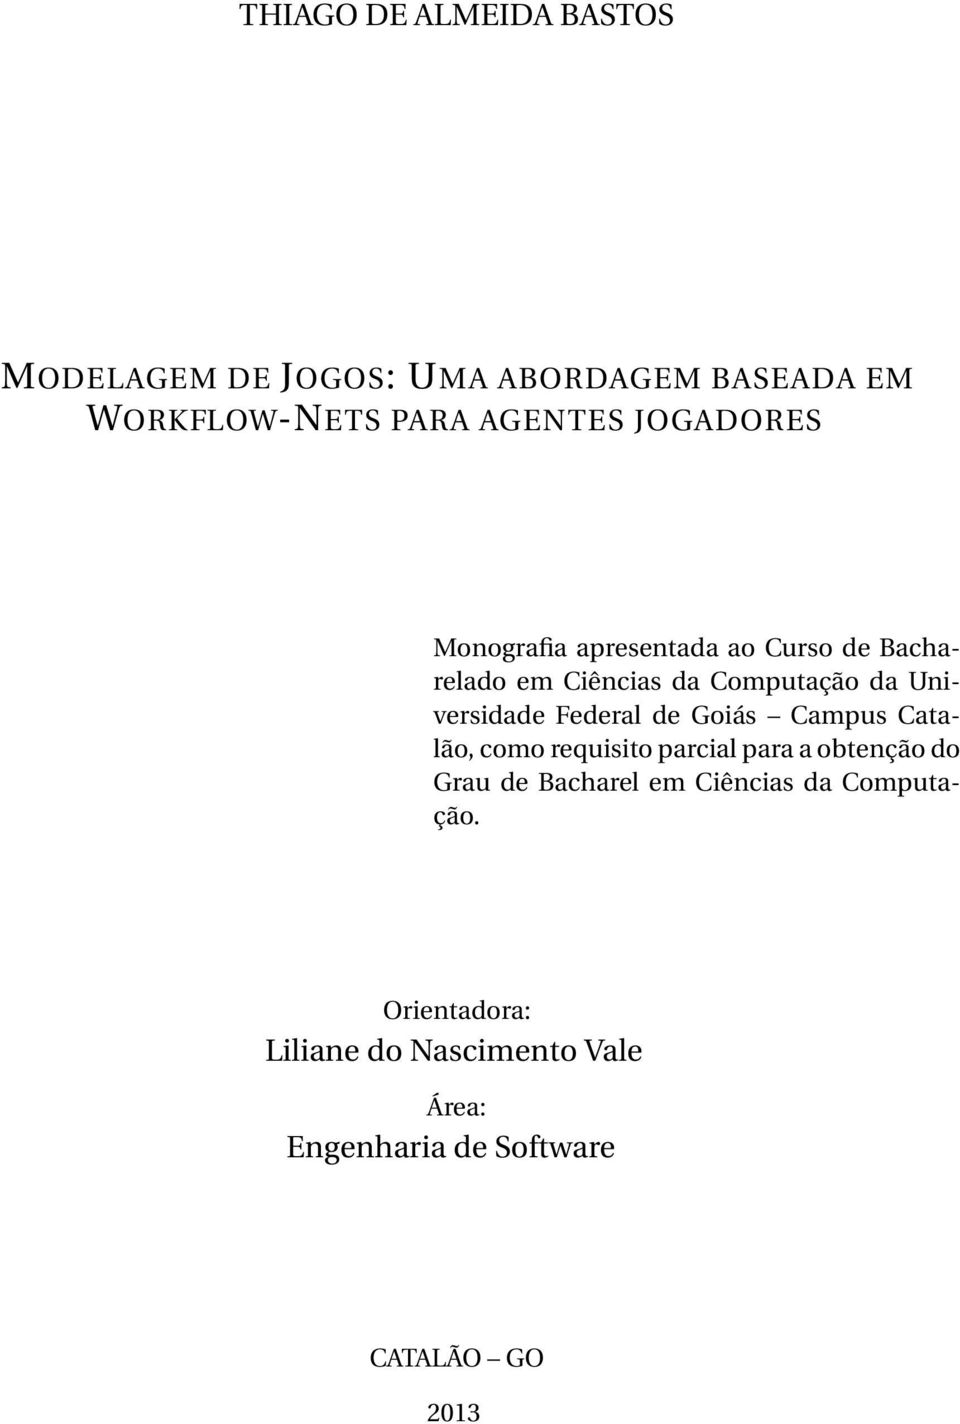 Federal de Goiás Campus Catalão, como requisito parcial para a obtenção do Grau de Bacharel em